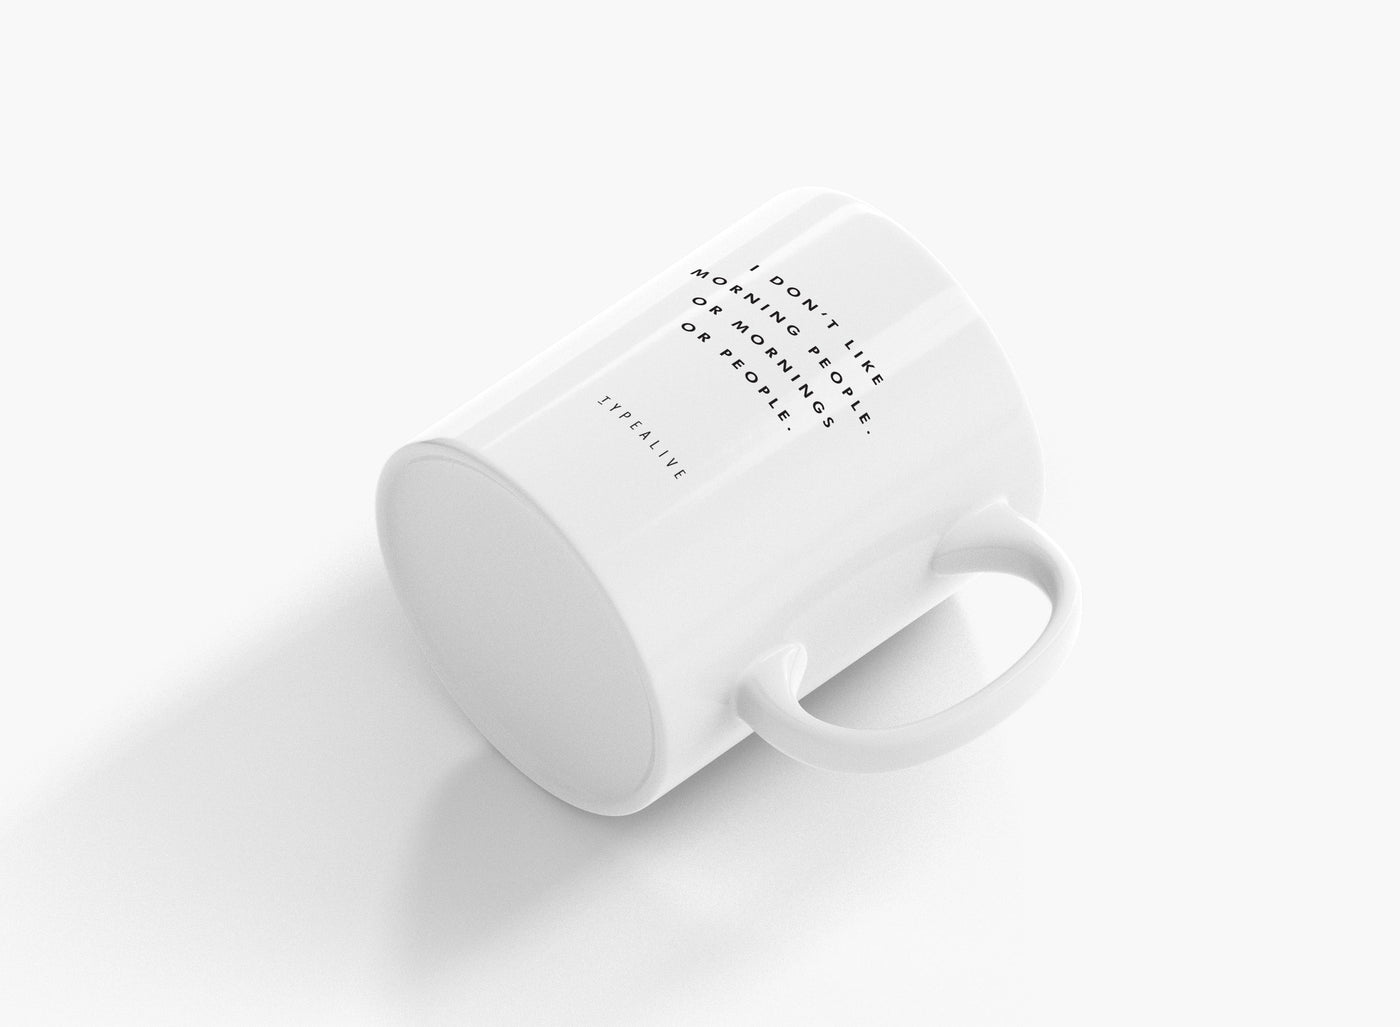 typealive - Tasse aus Keramik / Morning People